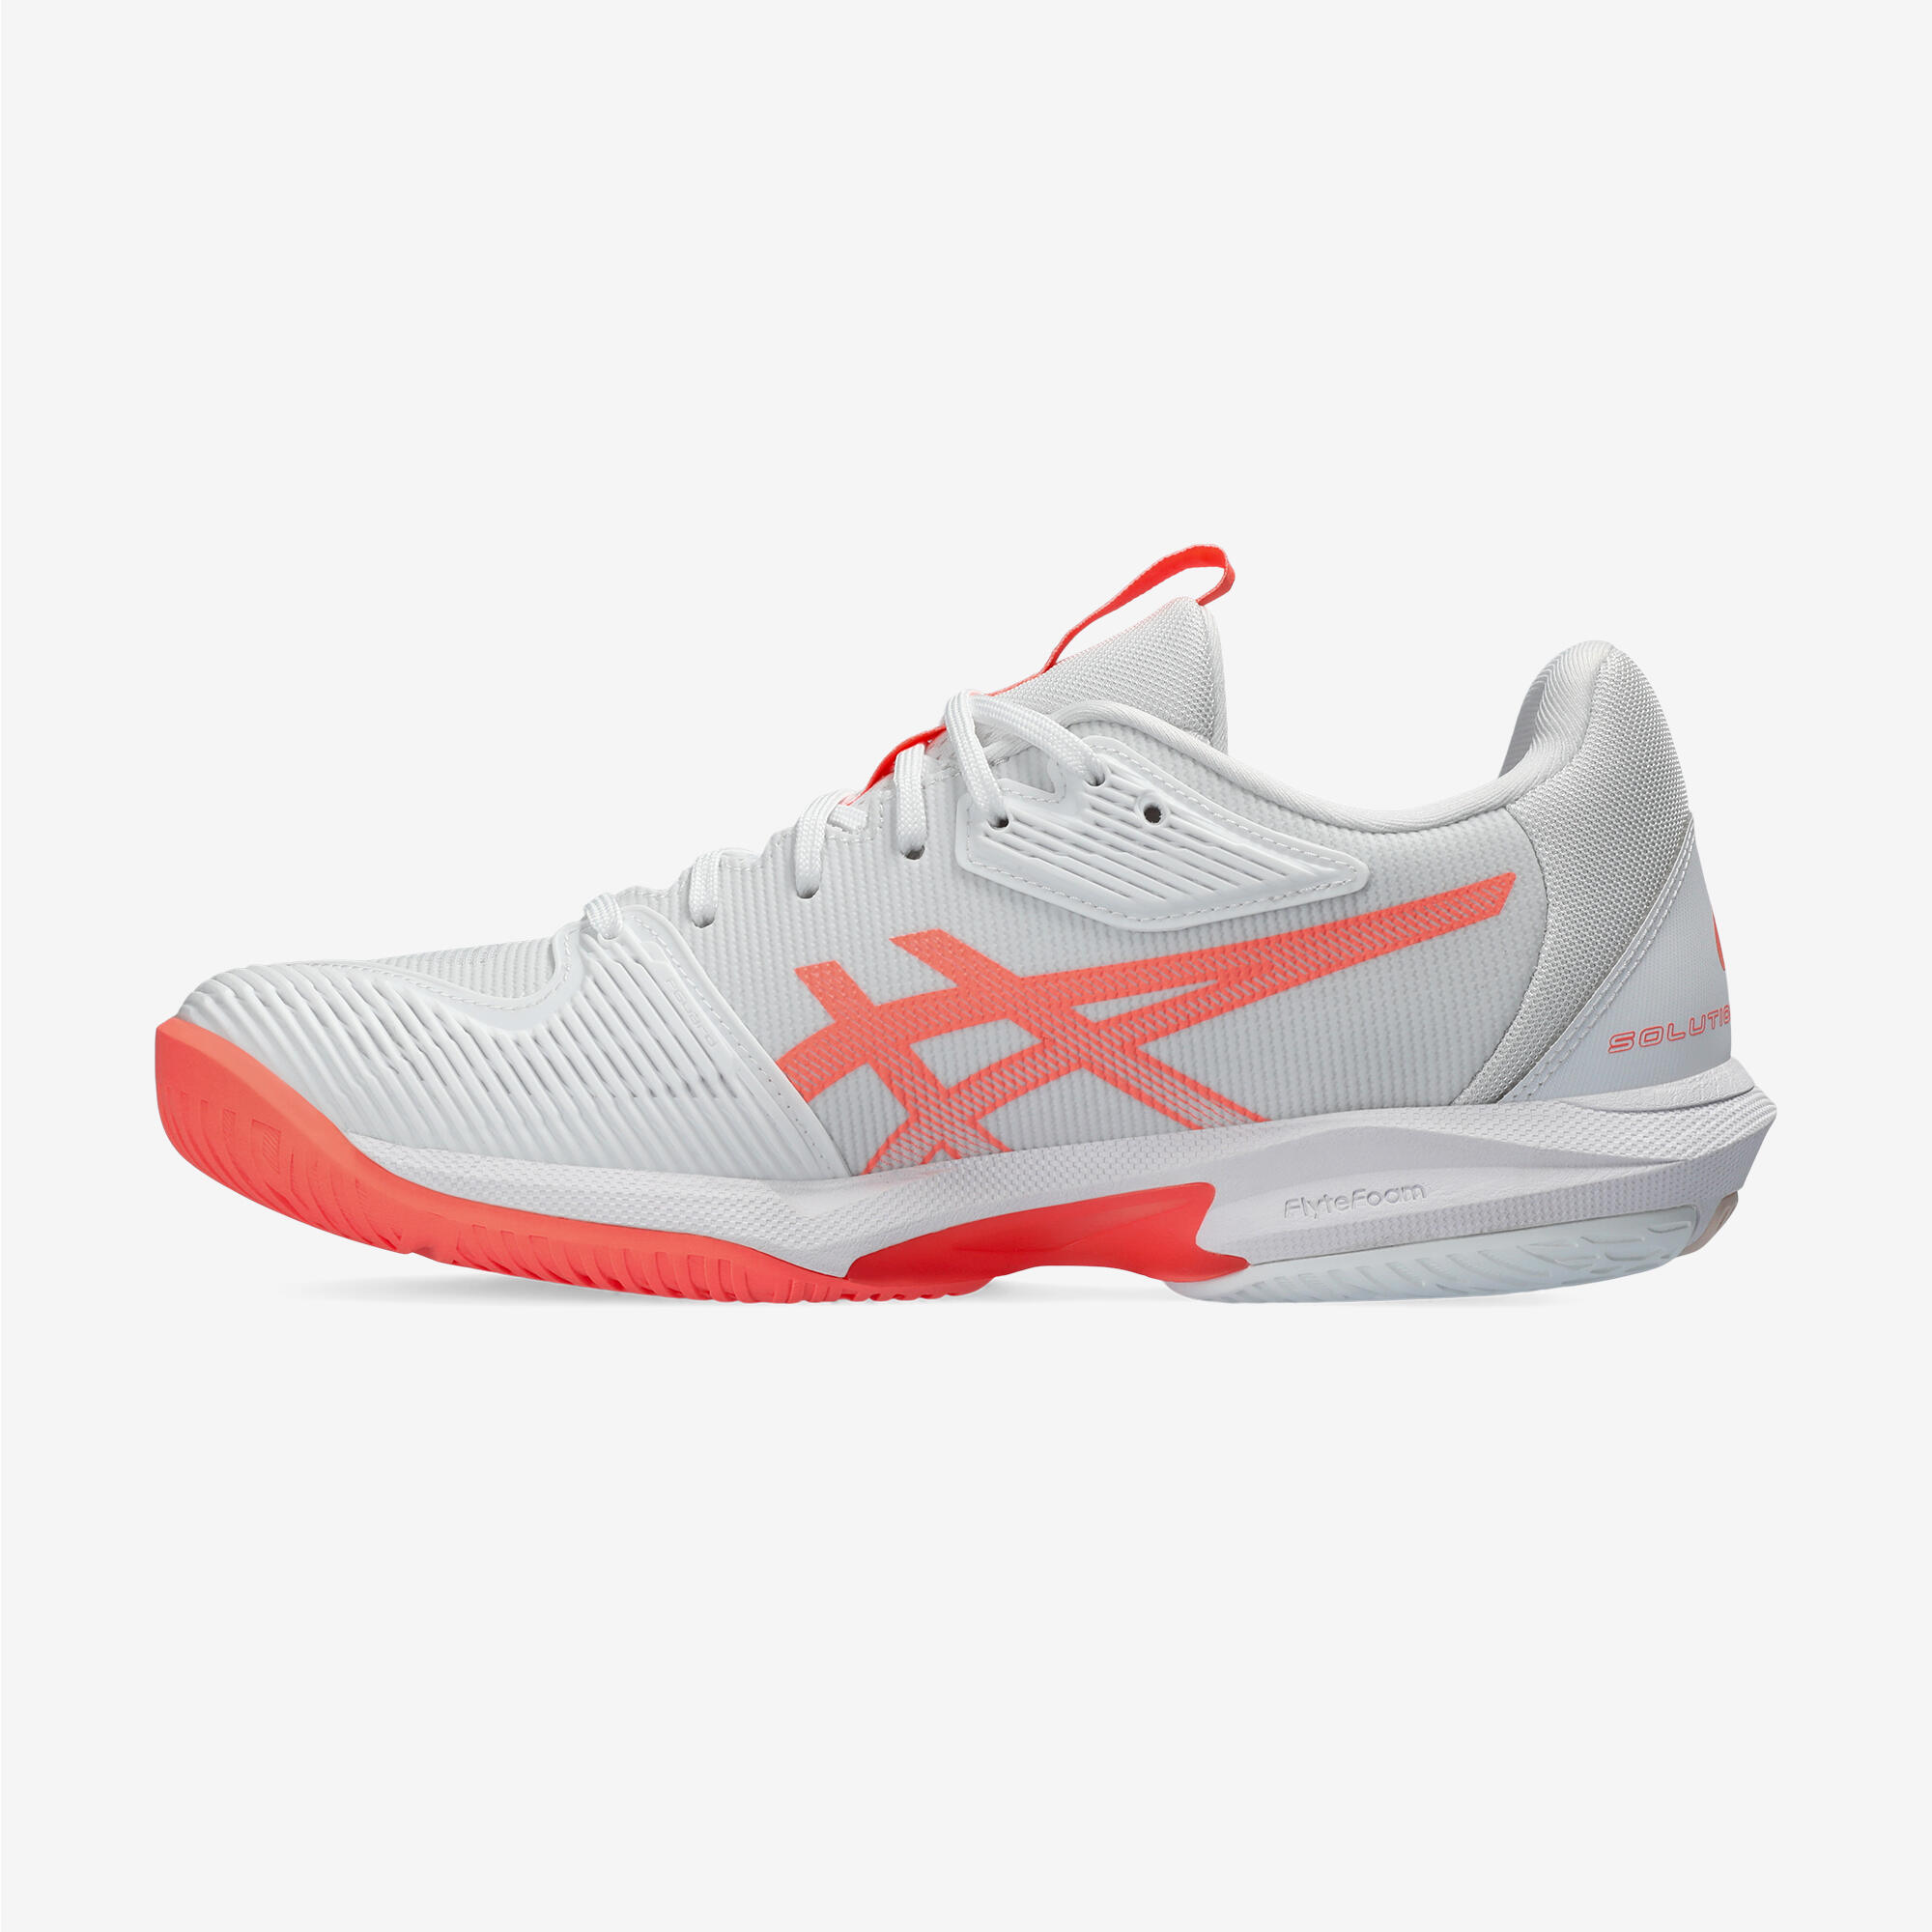 Women's Tennis Multicourt Shoes Gel Solution Speed FF 3 - White/Orange 2/7